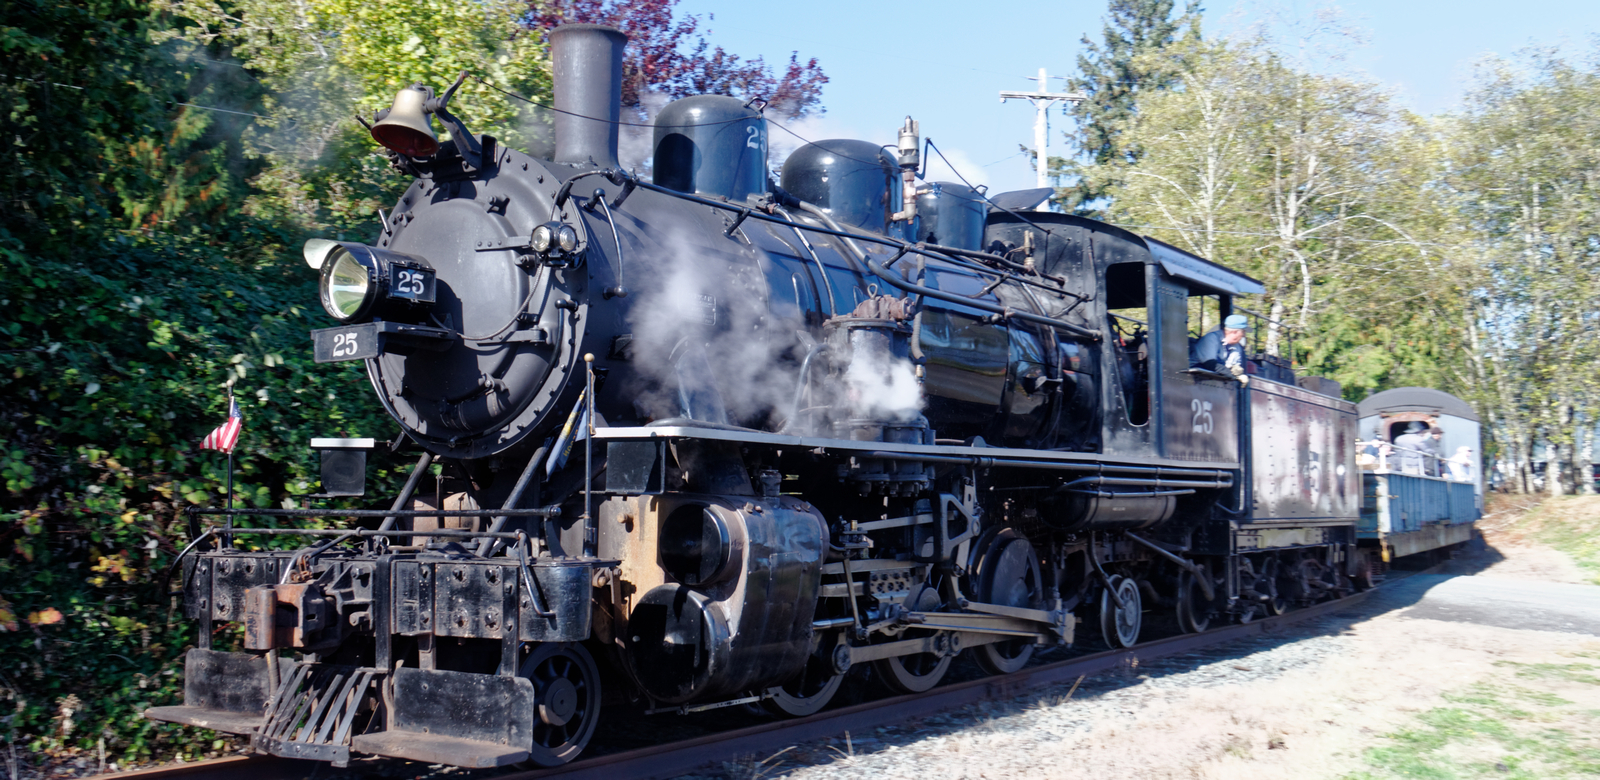 No. 25 in October 2015 on the Oregon Coast Scenic Railroad